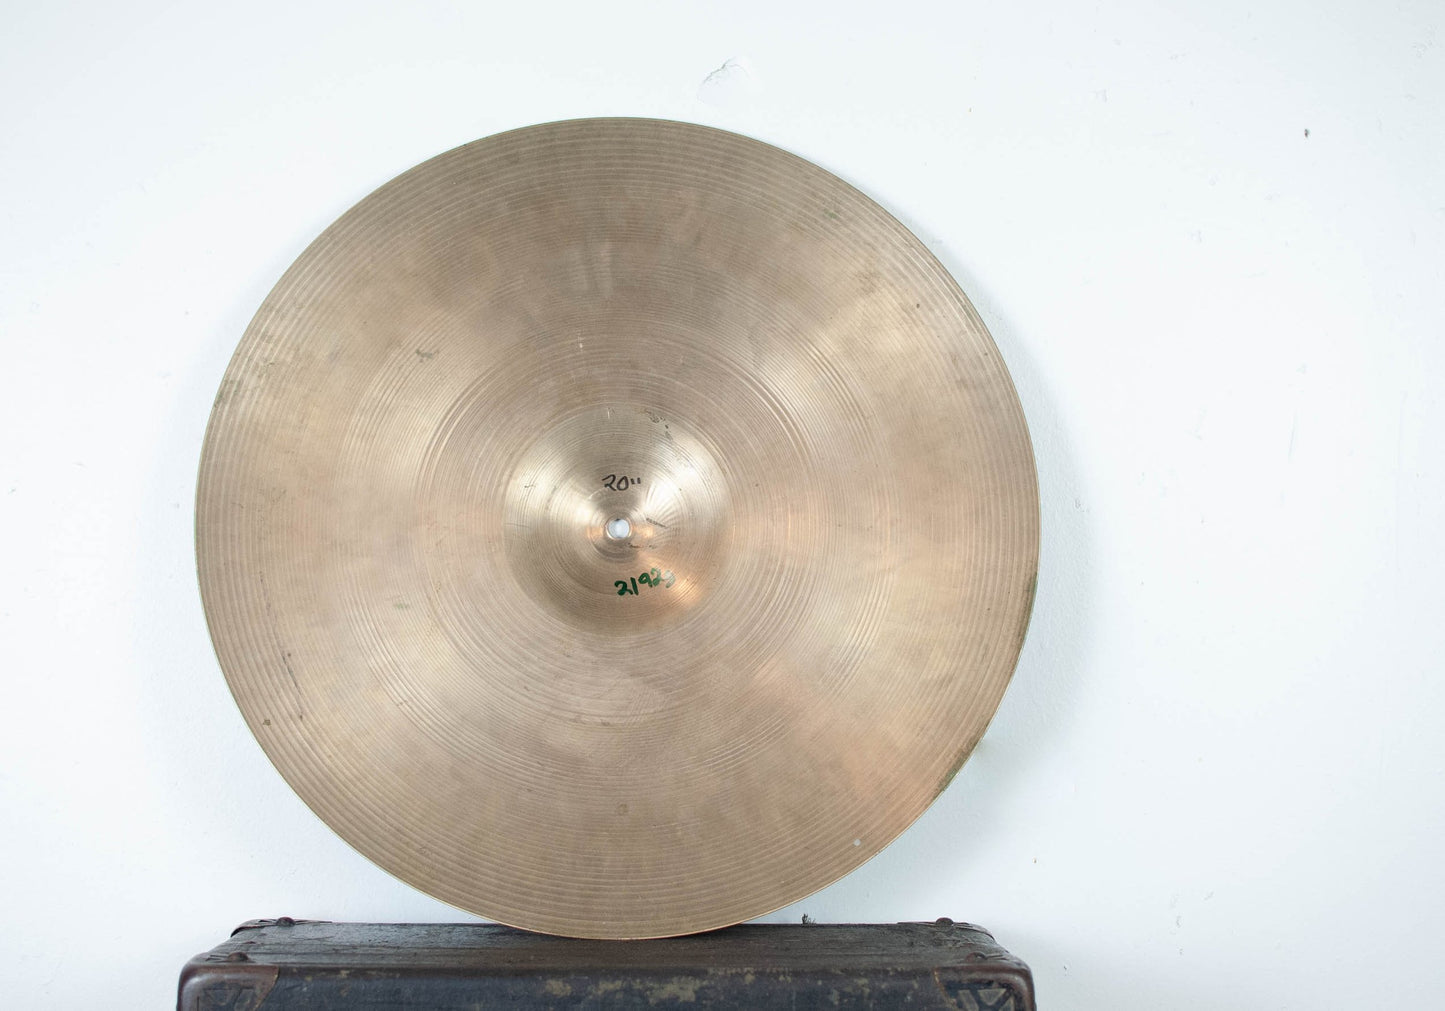 1960s Zildjian A 20" Ride Cymbal 2192g